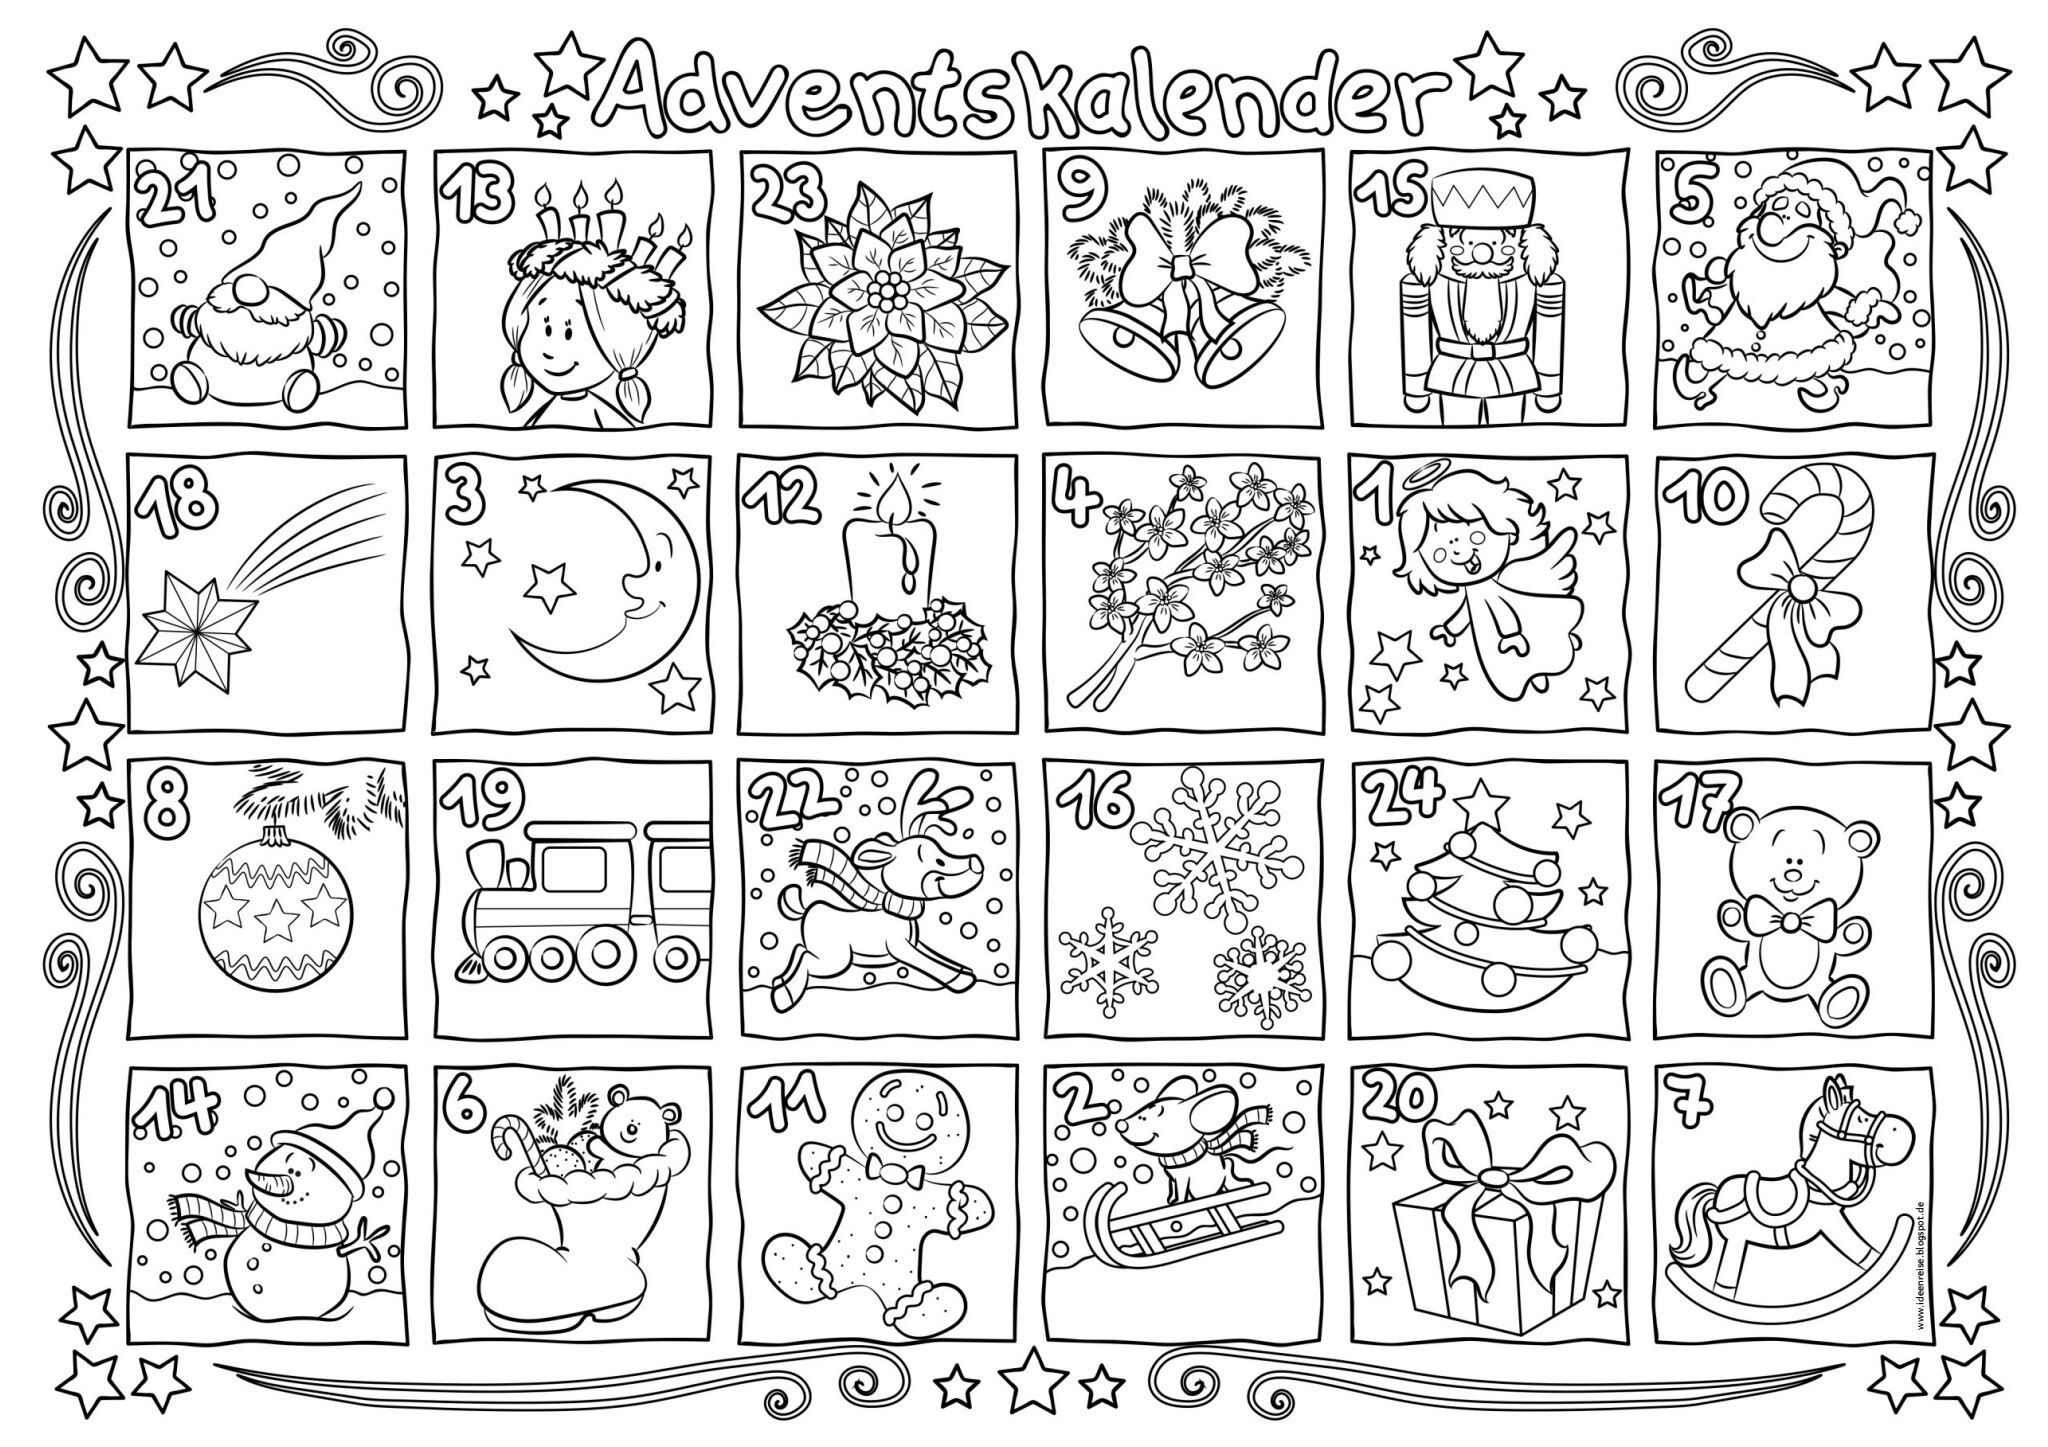 Адвент-календарь, раскраска «Микки и друзья» с маркировкой Disney (дизайн 2)